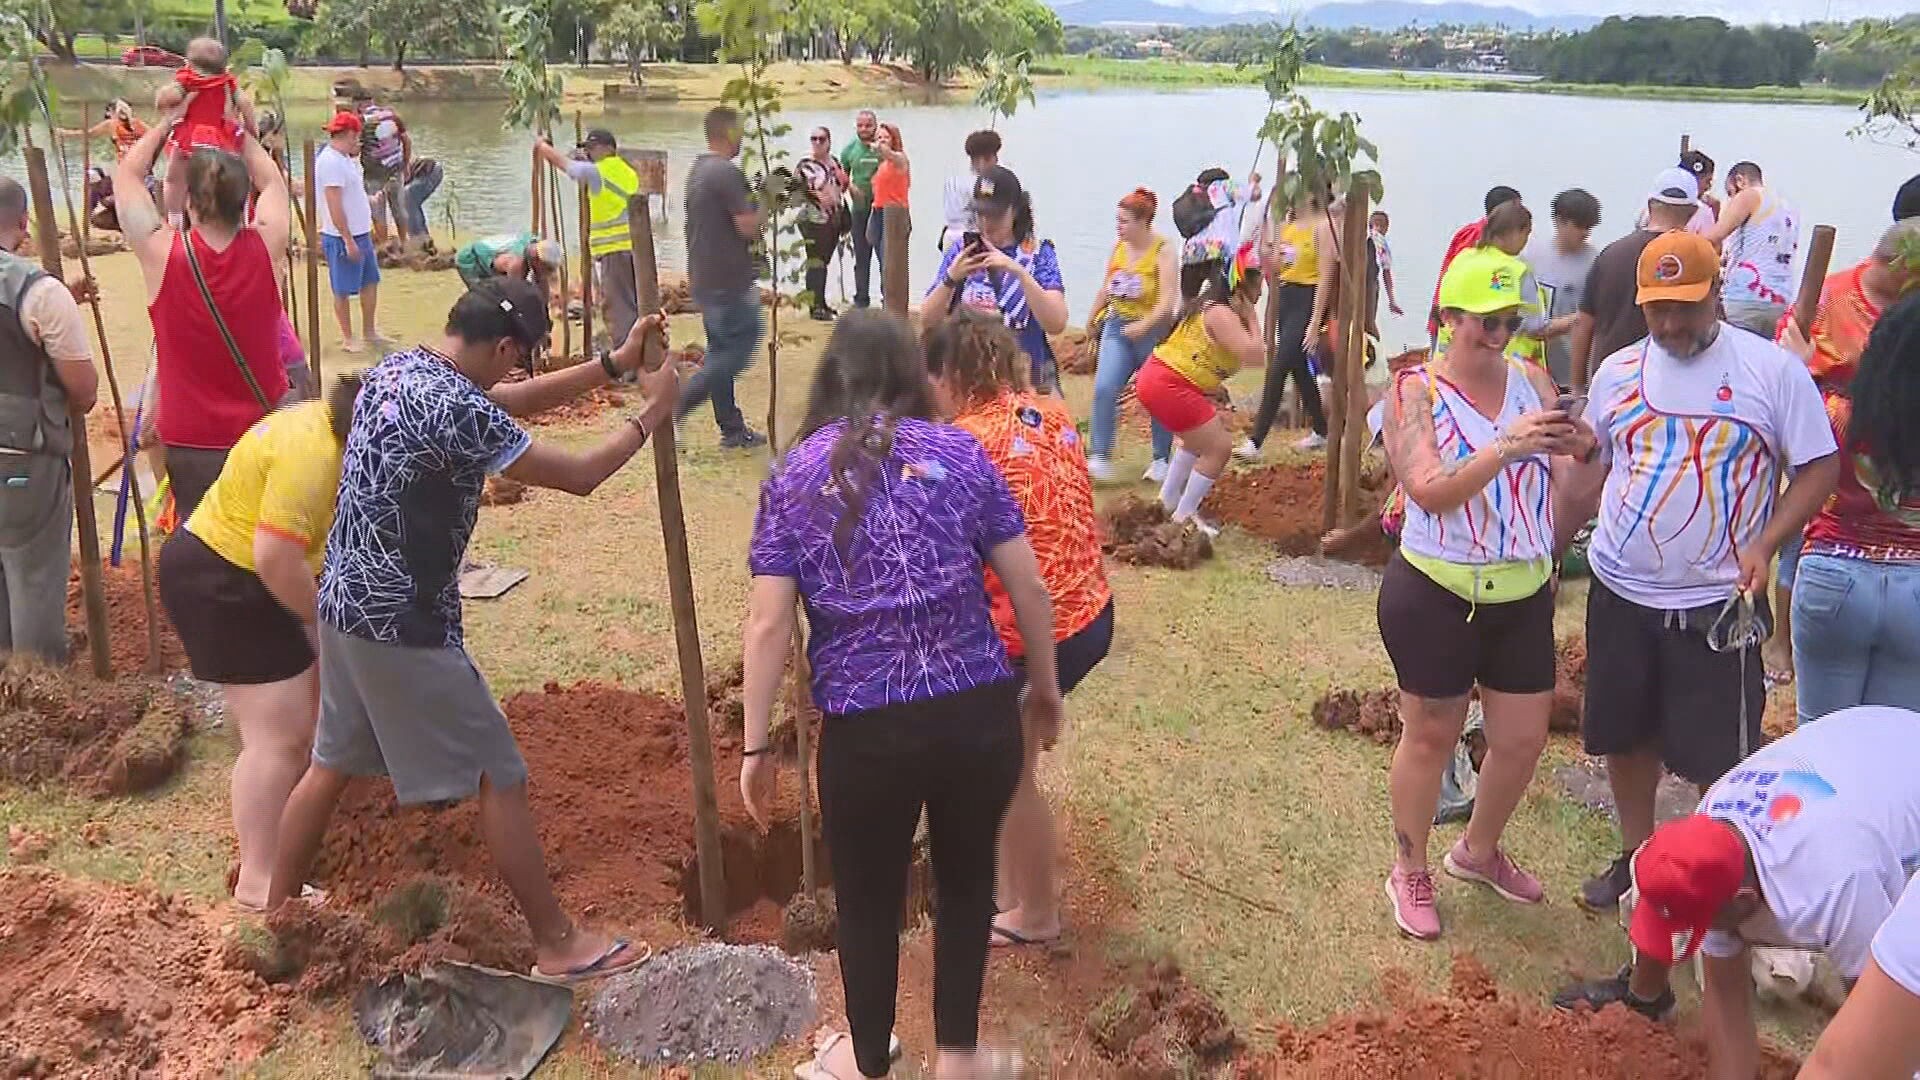 Representantes de blocos de rua e escolas de samba do Carnaval de BH se reúnem para plantar 100 mudas de árvores na Pampulha